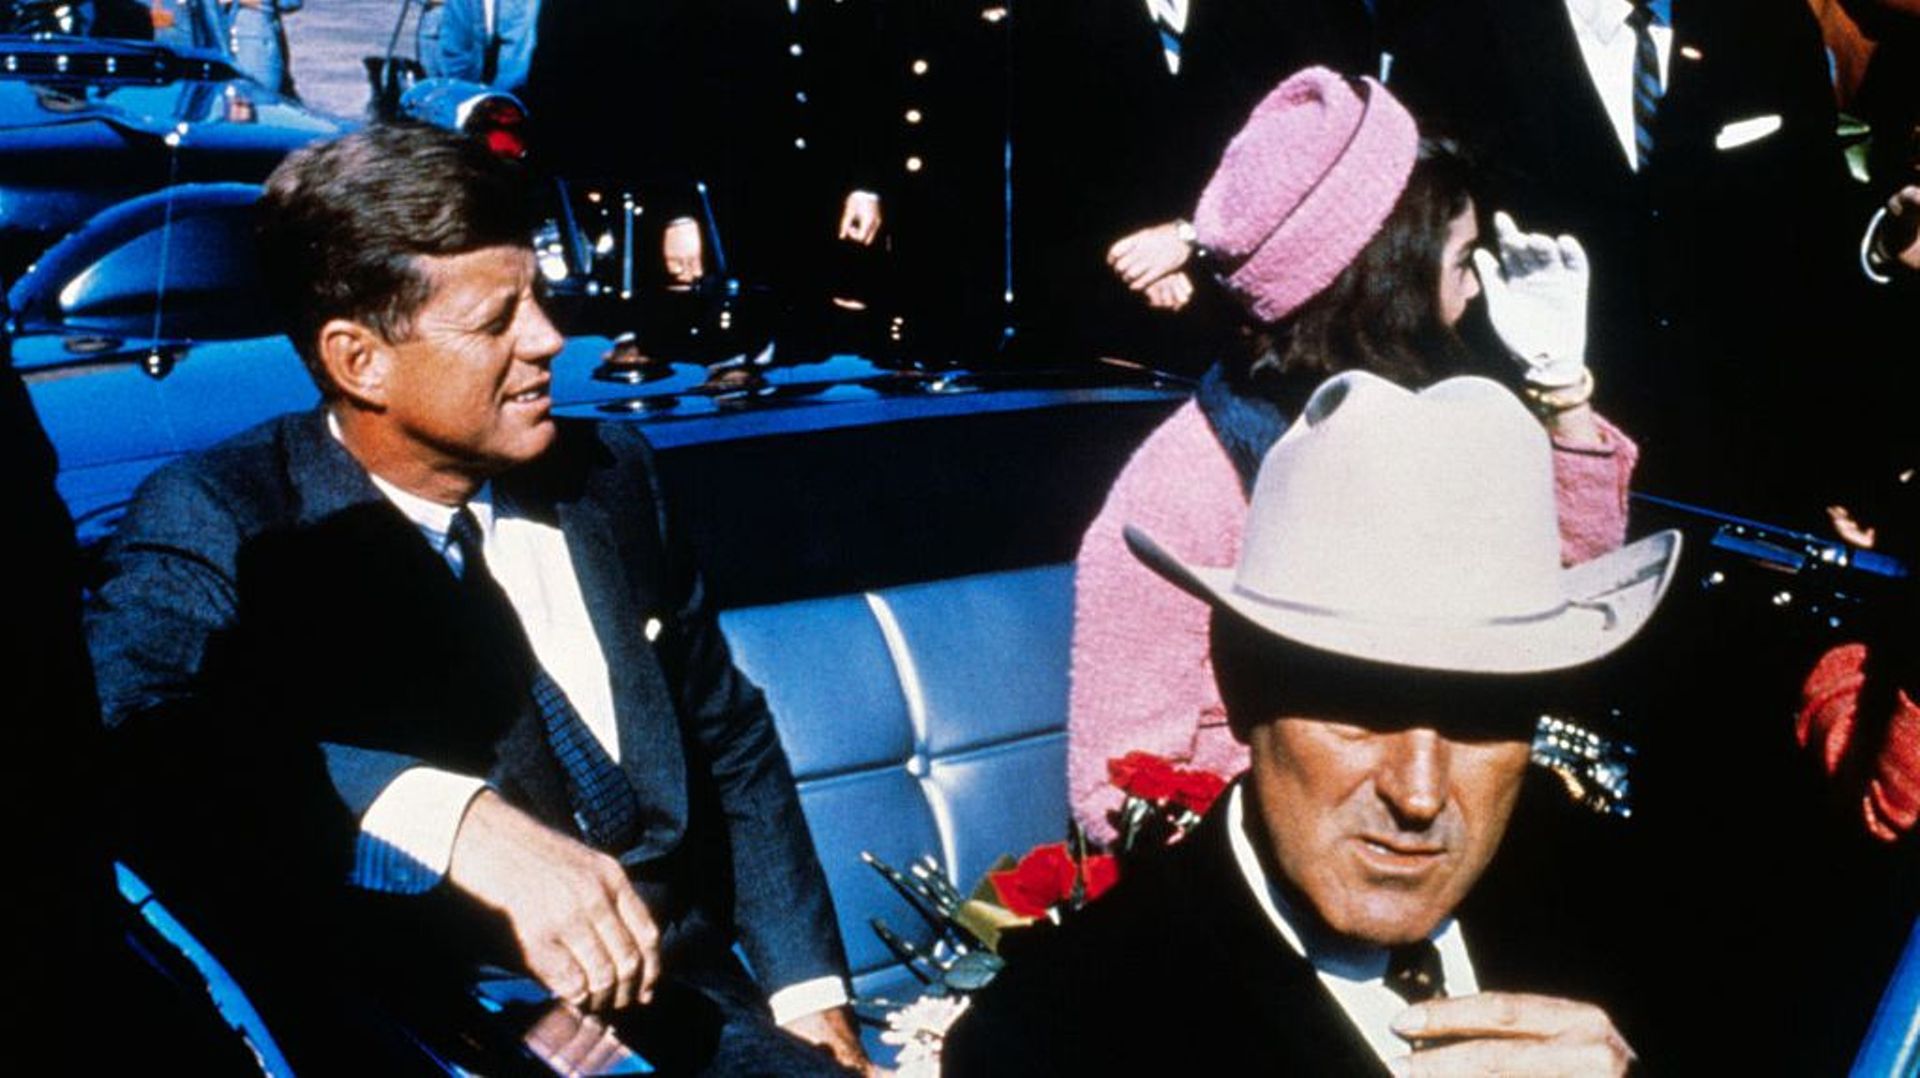 Une nouvelle révélation sur l’assassinat de Kennedy ? Pourquoi le témoignage d’un ancien garde du corps est complotiste